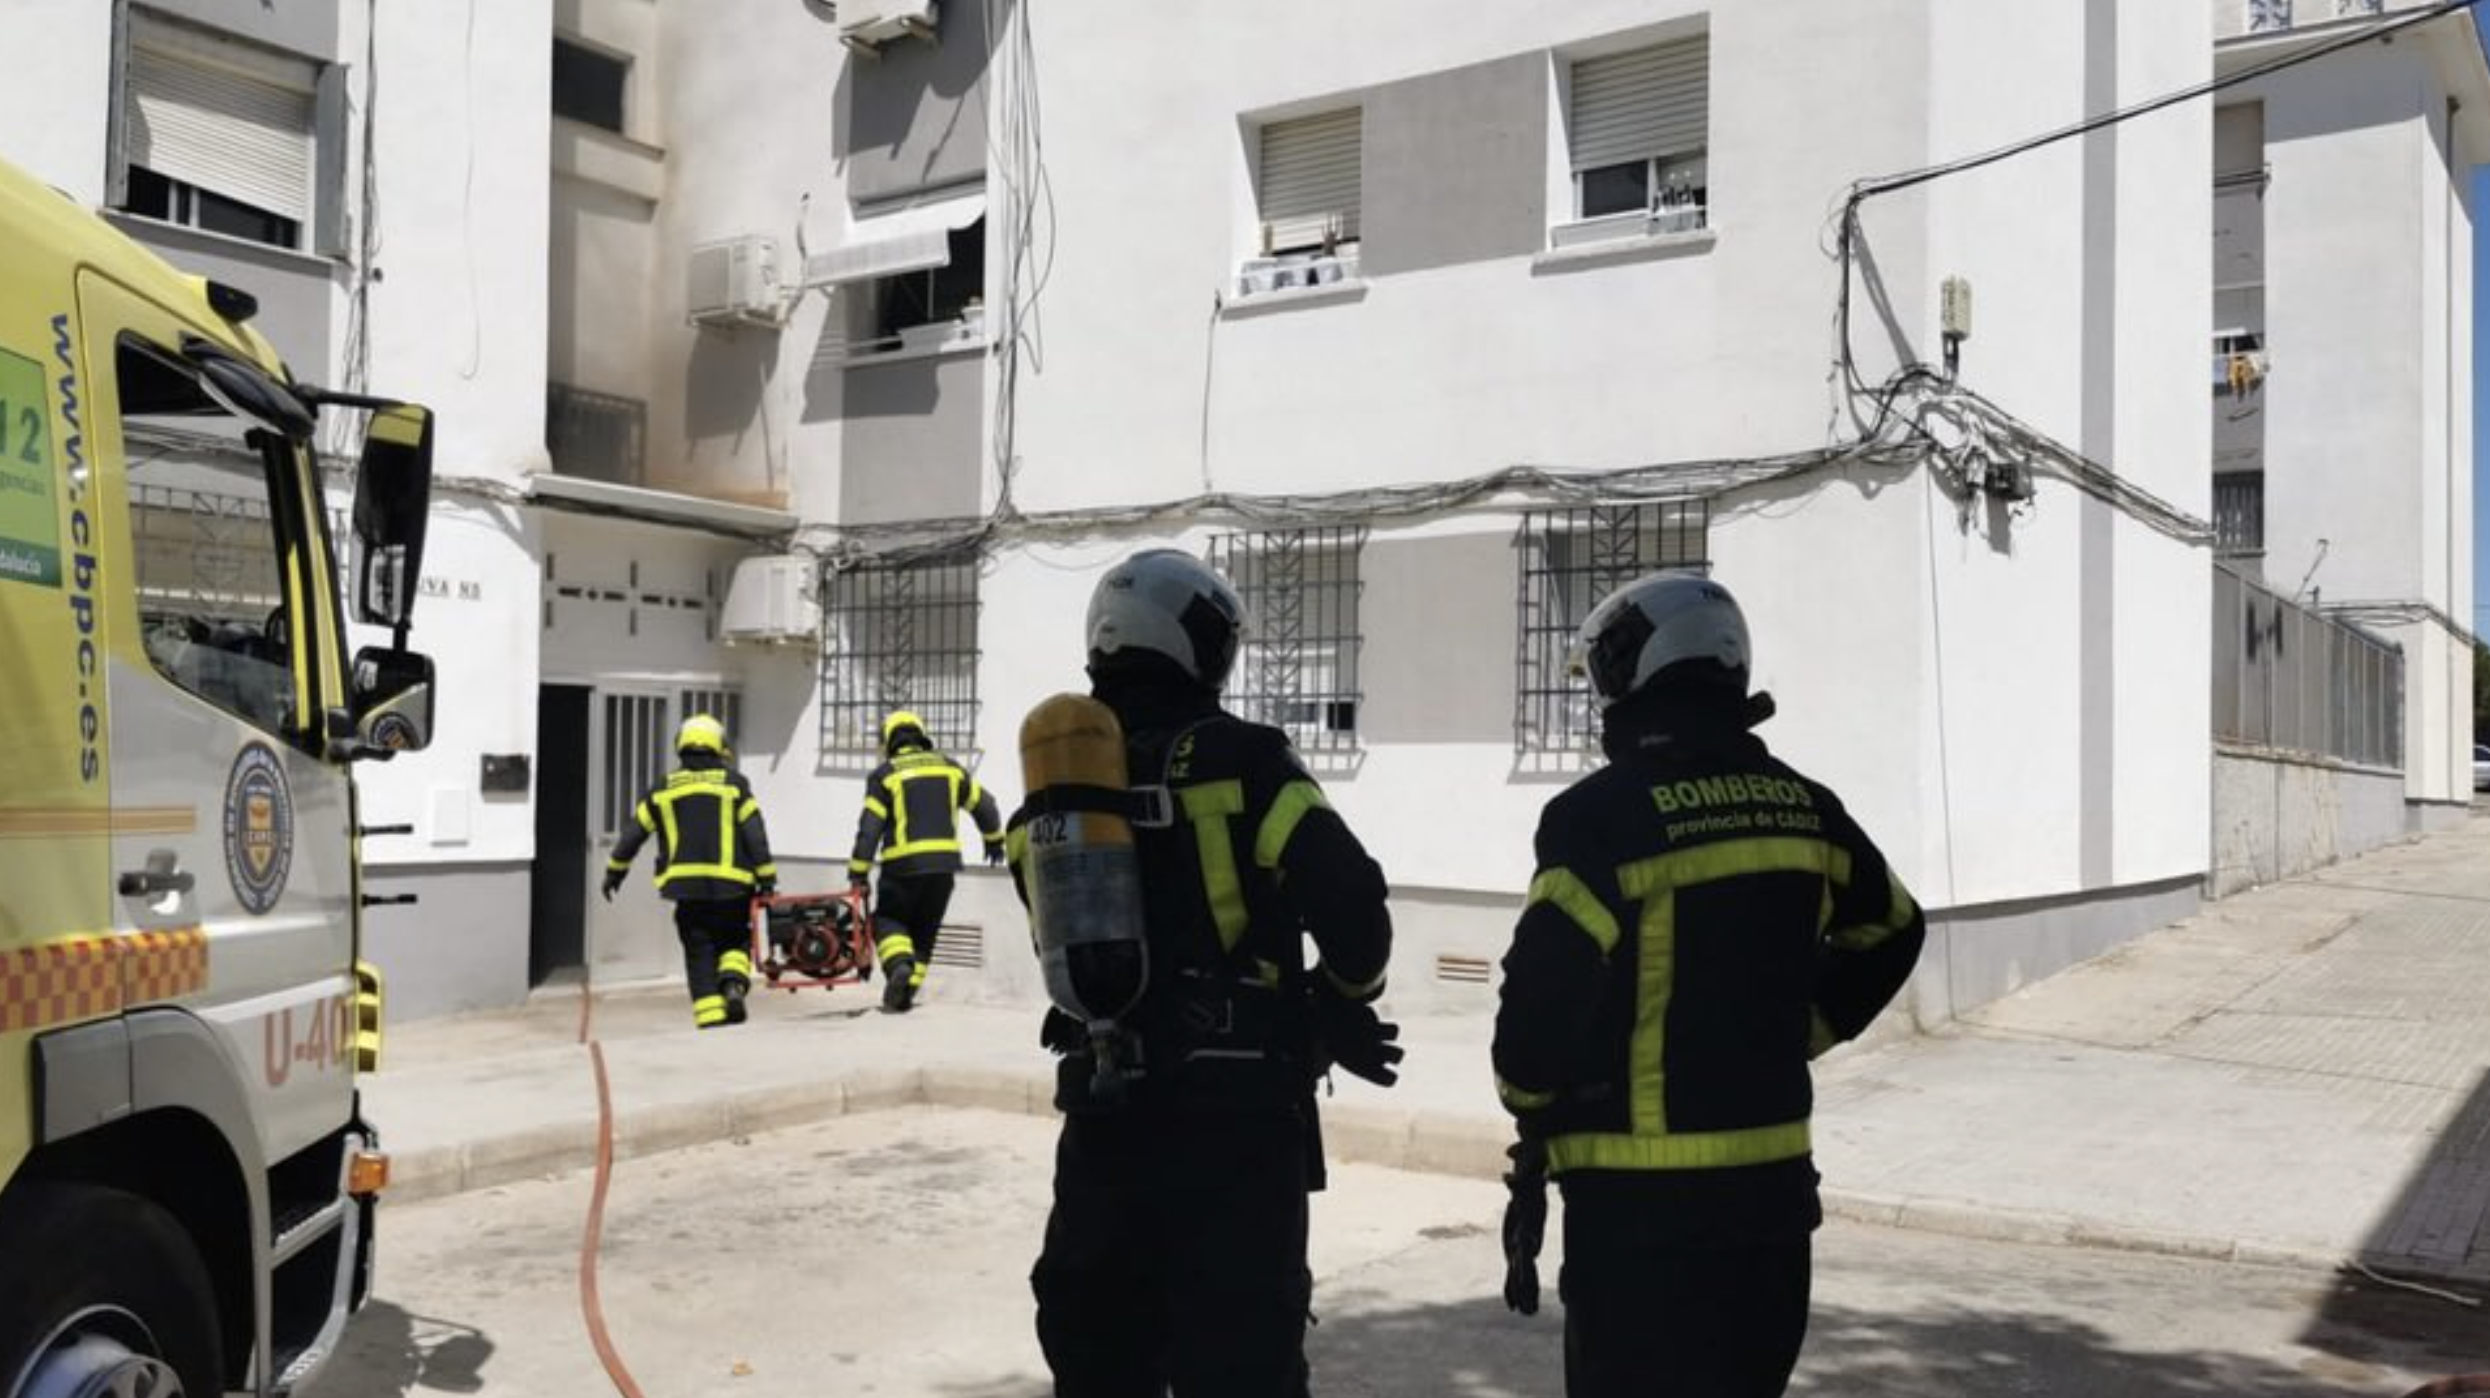 Bomberos de Jerez, delante del edificio donde ha tenido lugar el incendio. 21.55.37